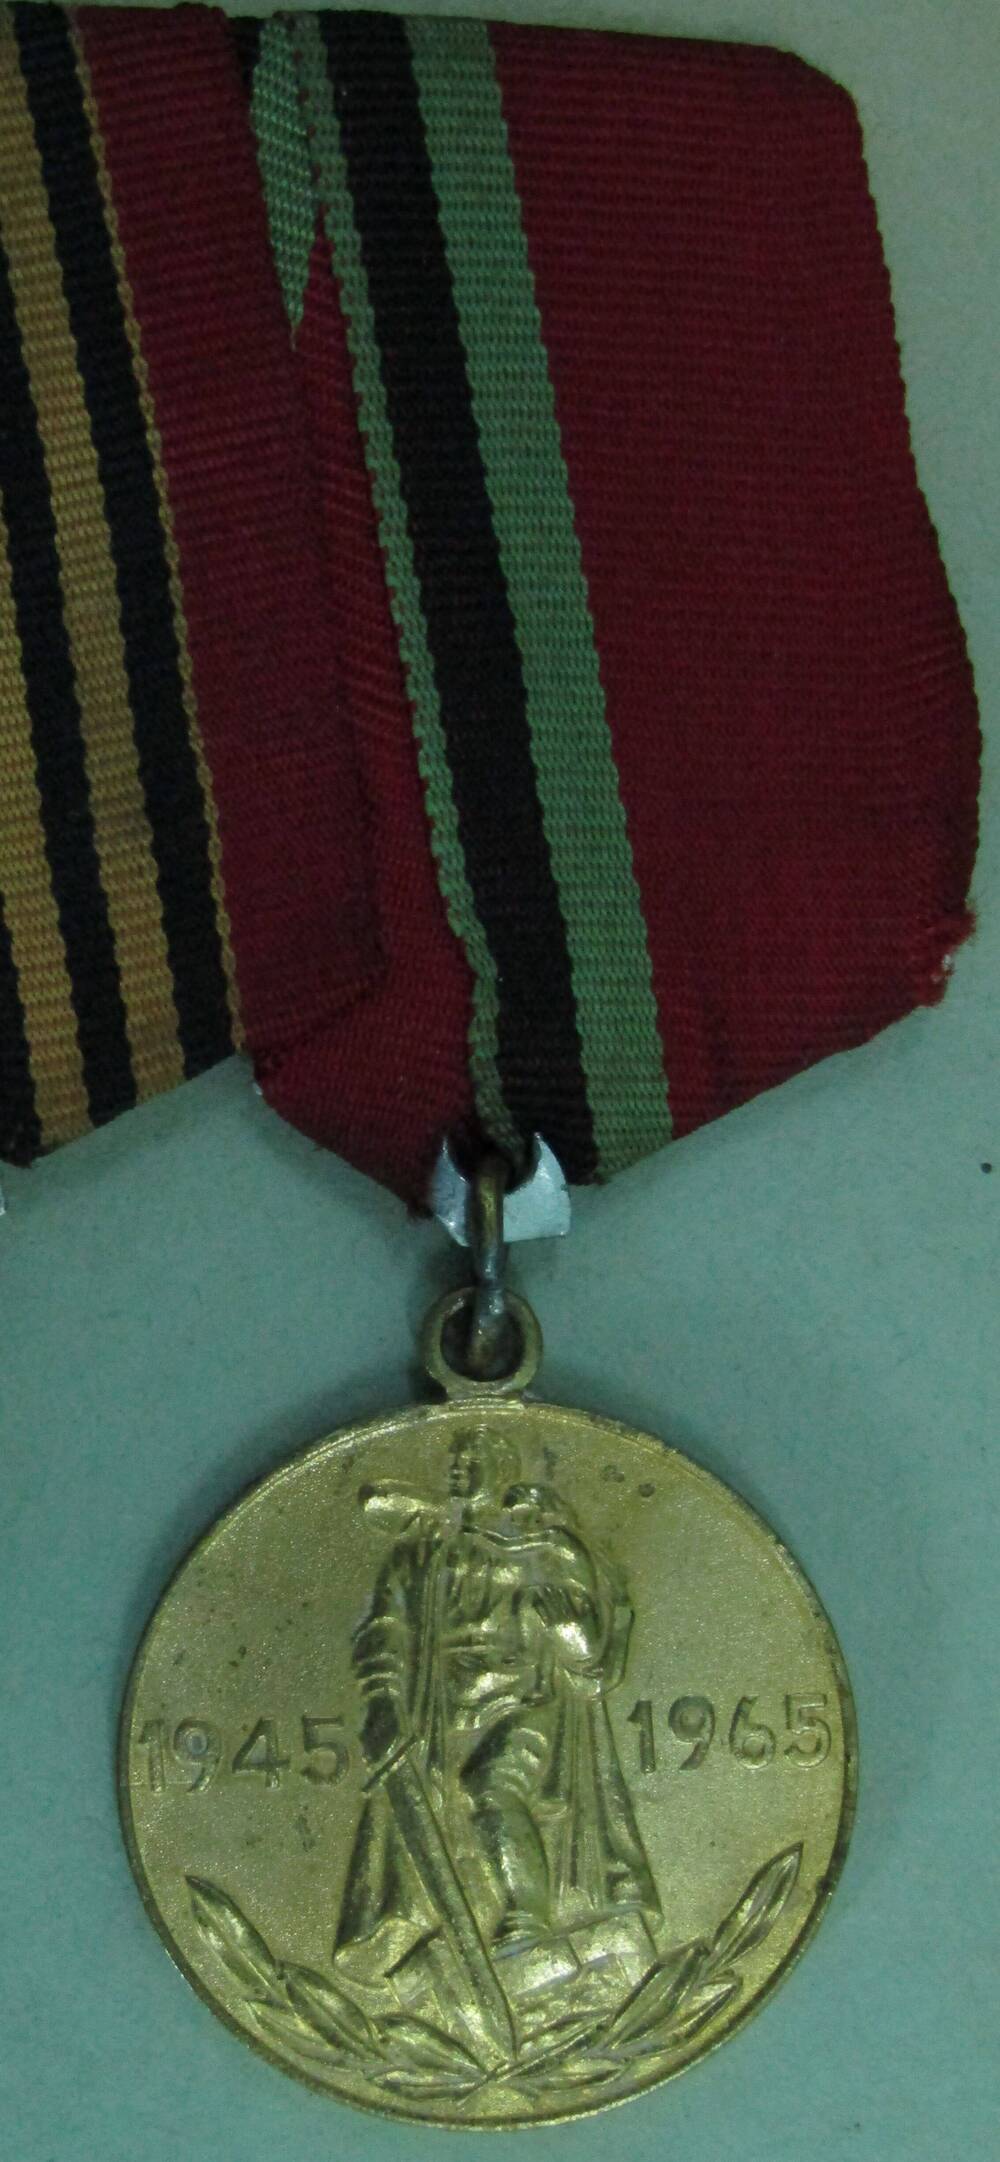 Медаль 20 лет победы в Великой Отечественной войне 1941 - 1945 гг. Мельникова Алексея Лаврентьевича.